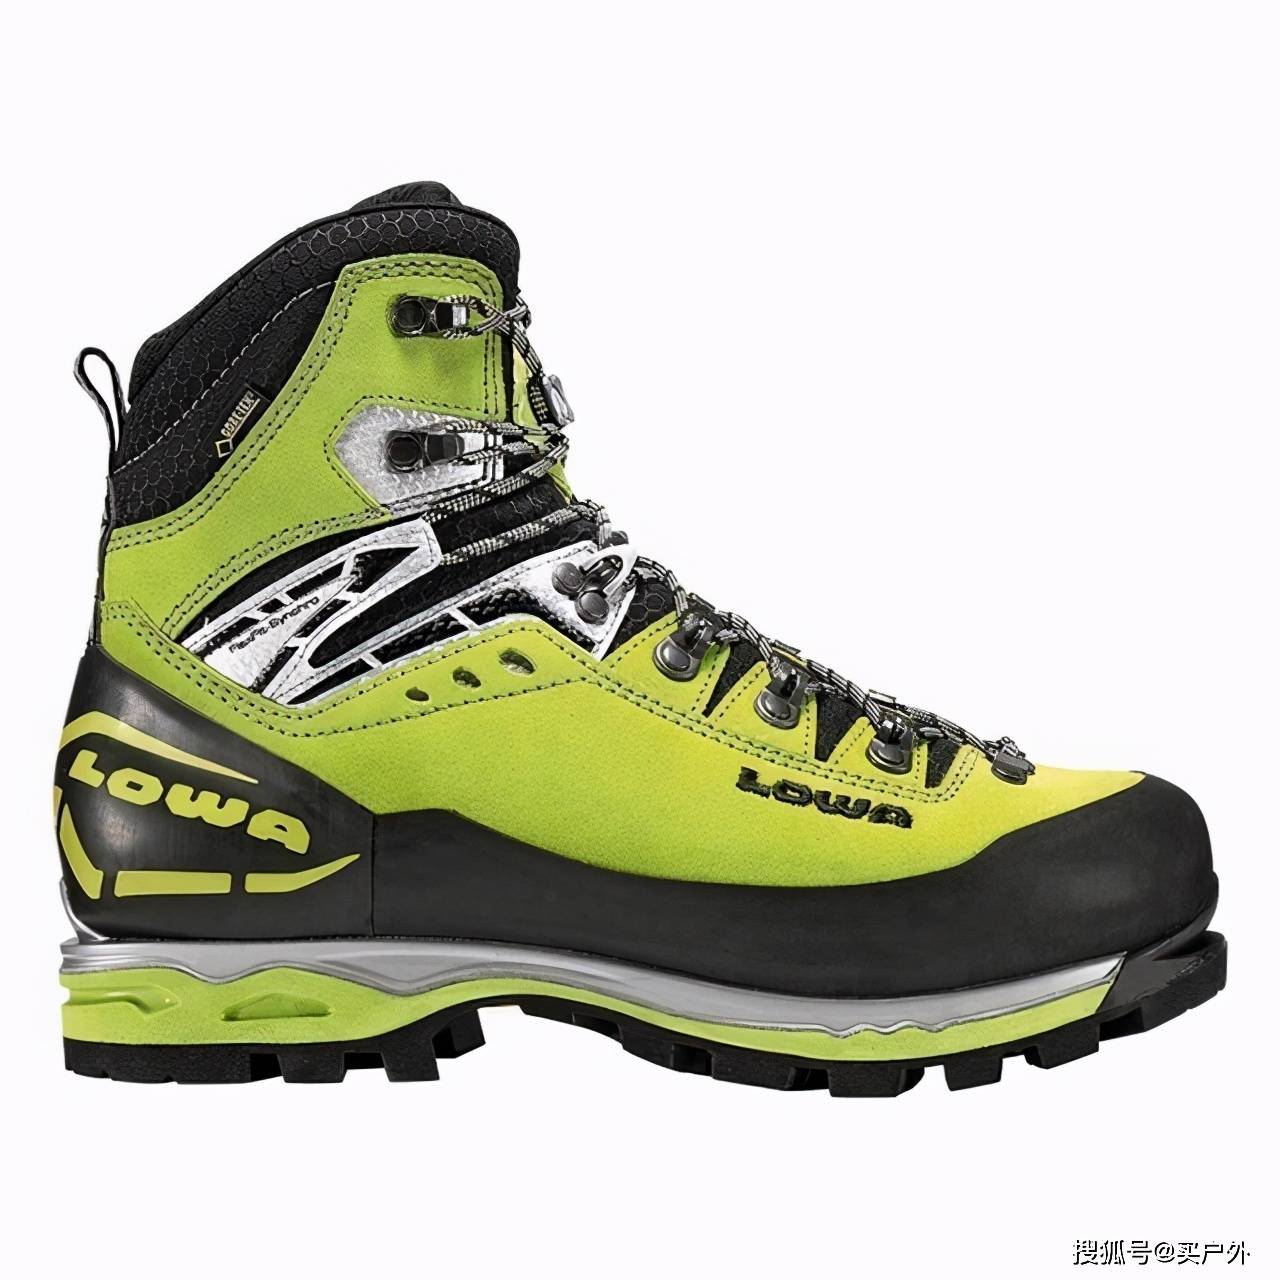 新しいスタイル zamberlan 登山靴 expert gtx pro - 登山用品 - www.fonsti.org